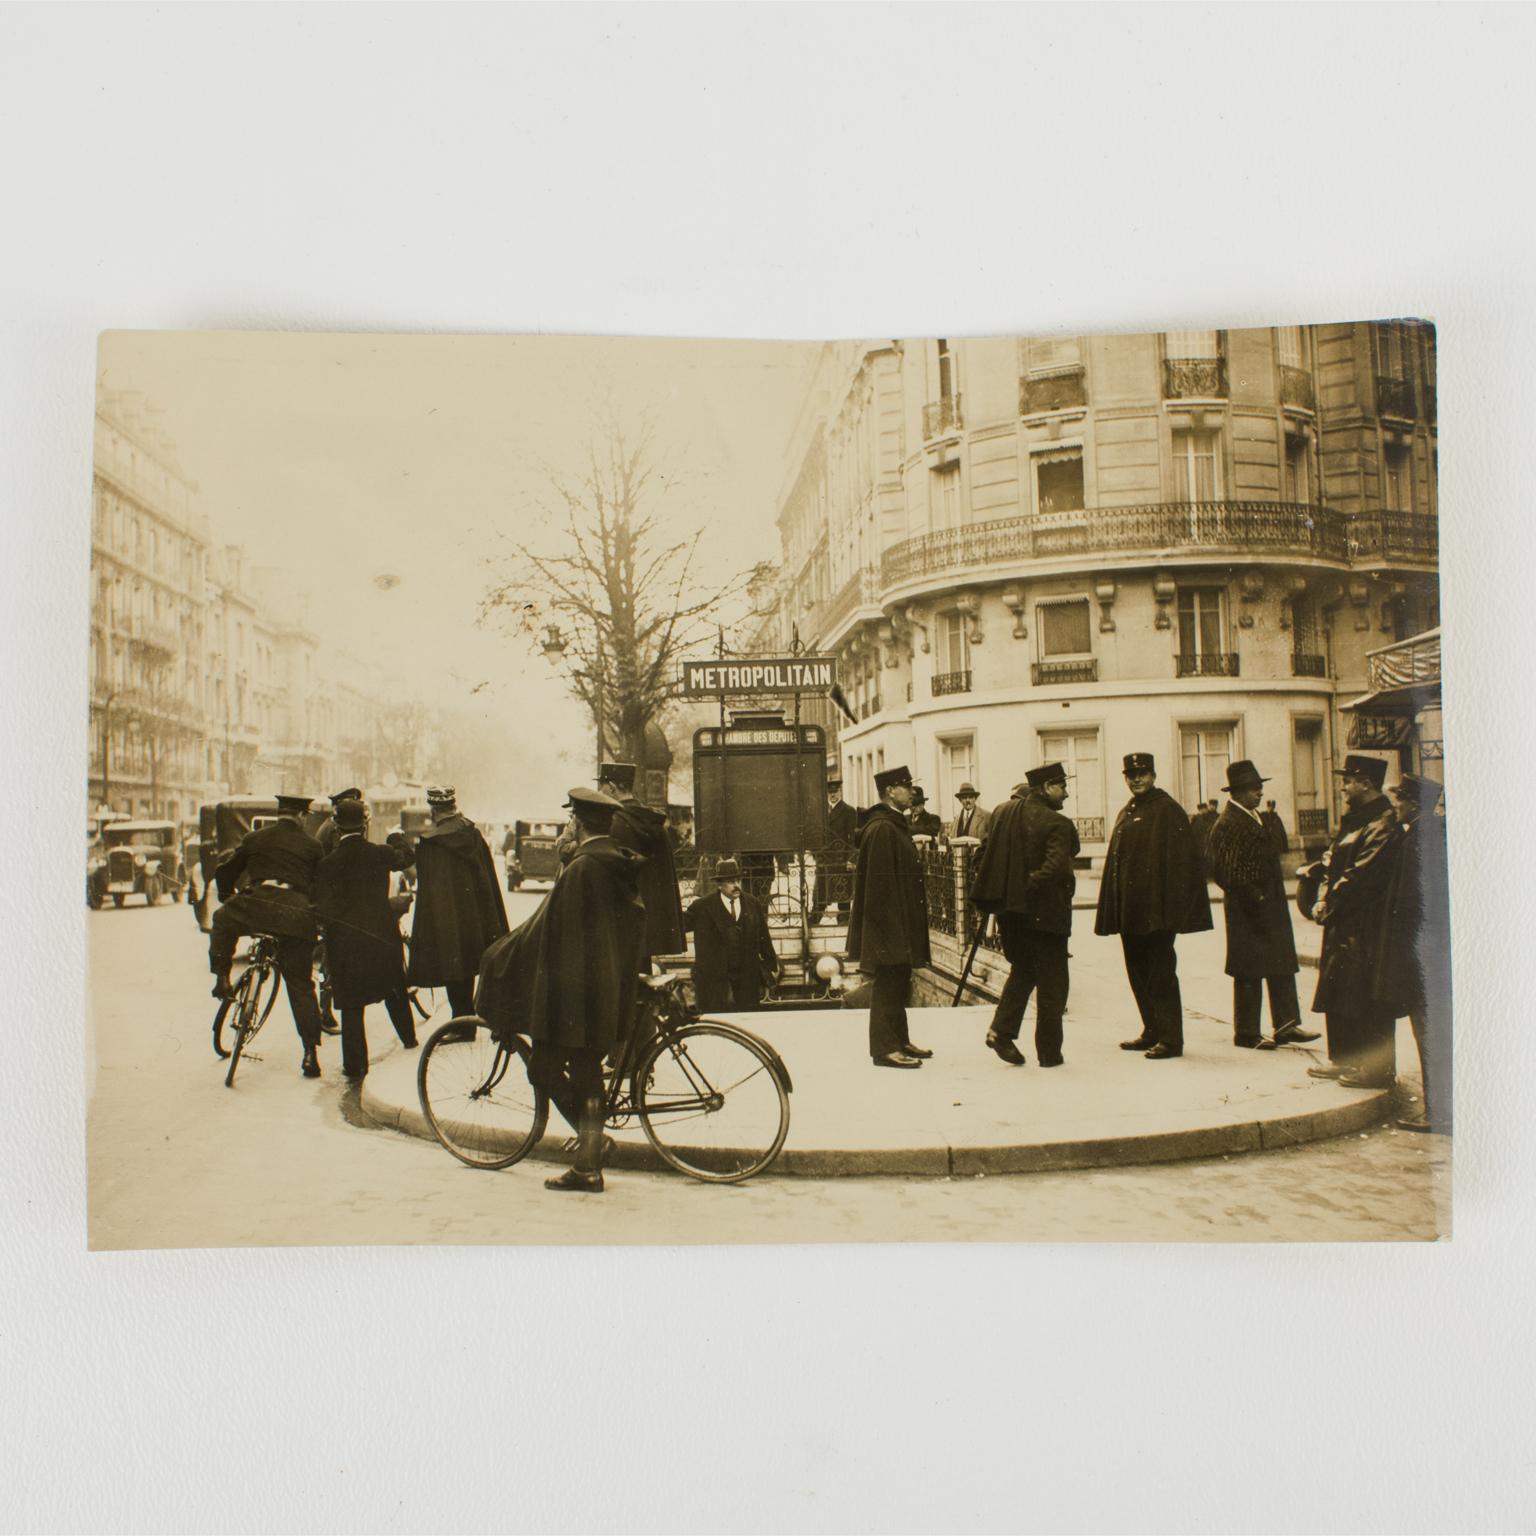 Une photographie originale unique en noir et blanc à la gélatine argentique réalisée par l'agence de presse Keystone View Co. Policiers à Paris, vers 1930.
Policiers français à Paris devant une station de métro attendant le début d'une manifestation